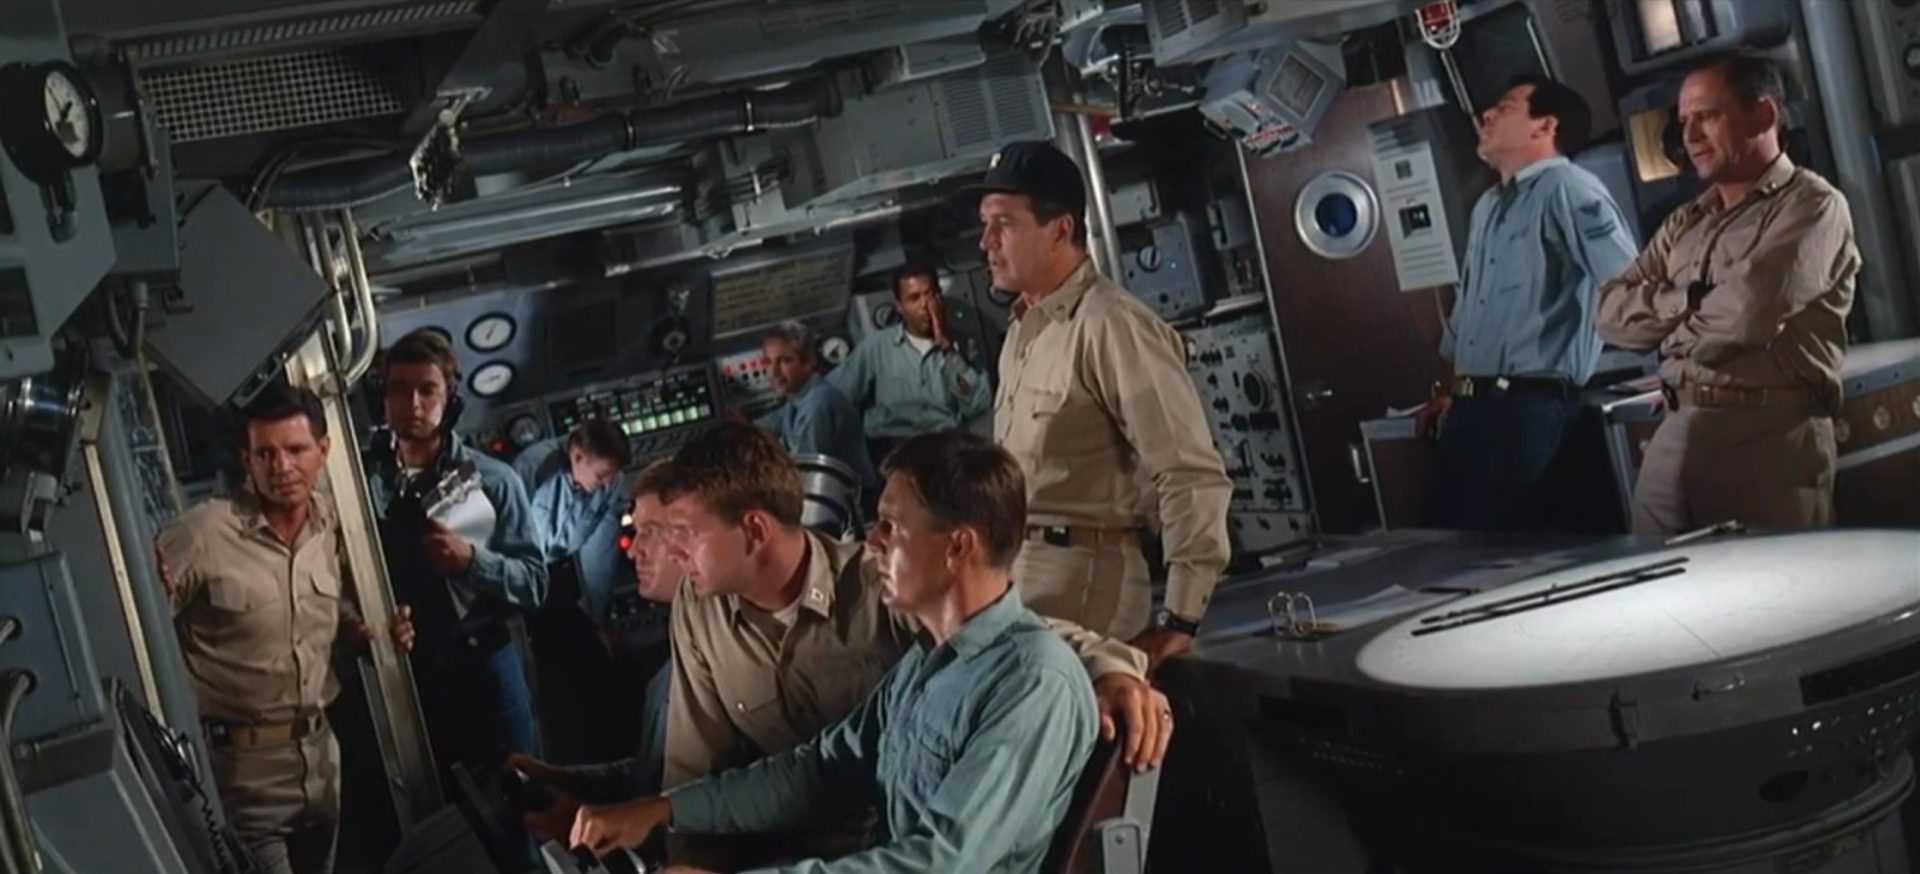 Blick in Kommandozentrale des schräg nach links unten geneigten US-amerikanischen Atom-U-Bootes mit etlichen Crewmitgliedern und Rock Hudson als Kommandant im Zentrum.